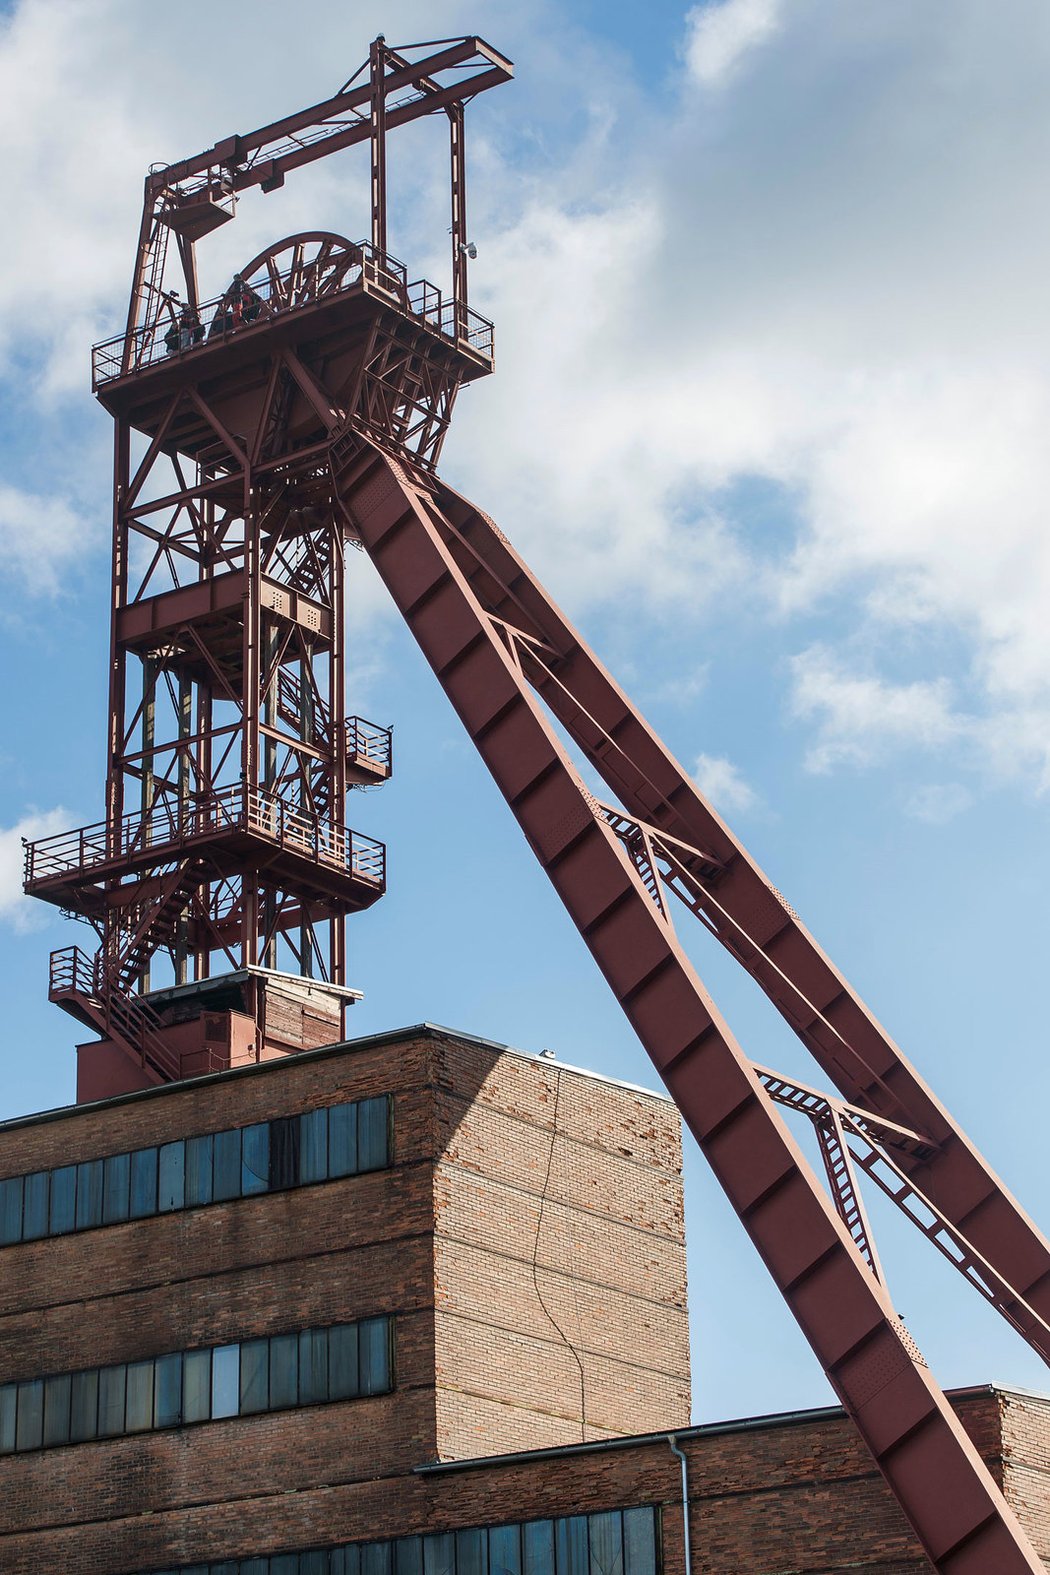 V rámci prohlídky skanzenu Žacléř je možnost vydat se na 52 m vysokou těžní věž, ze které se naskytne pohled na panorama Krkonoš. Návštěvník se dostane i do podzemí, pozná uhelnou sloj a ve strojovně byl zachován původní těžní stroj.